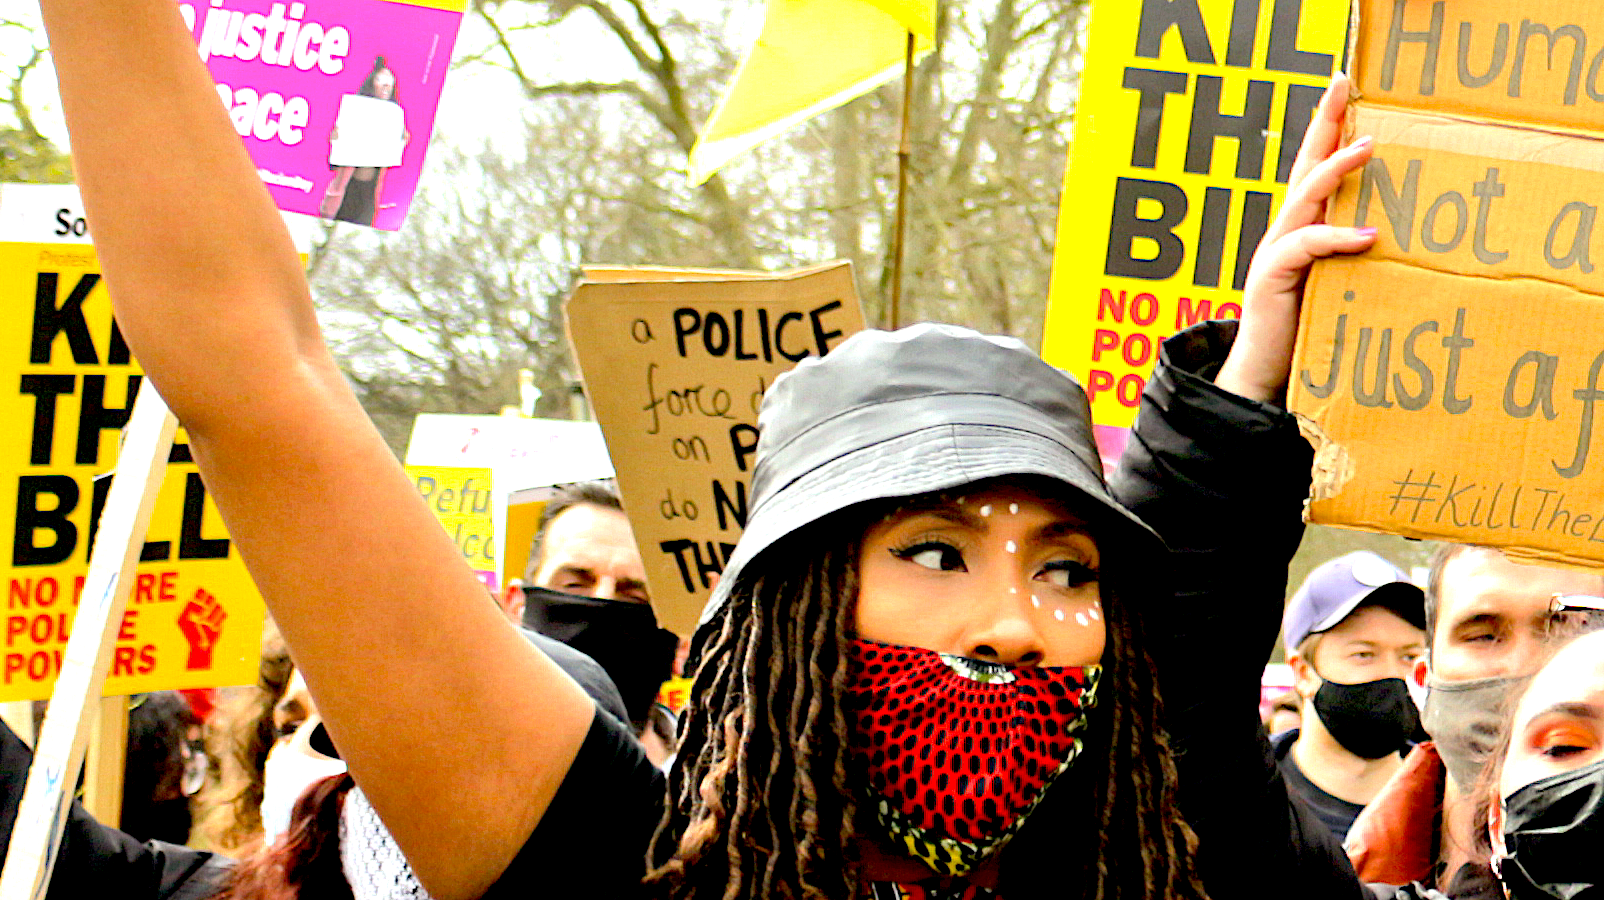 Protest_London_3.0_Steve Eason_CC BY-NC 2.0_16x9